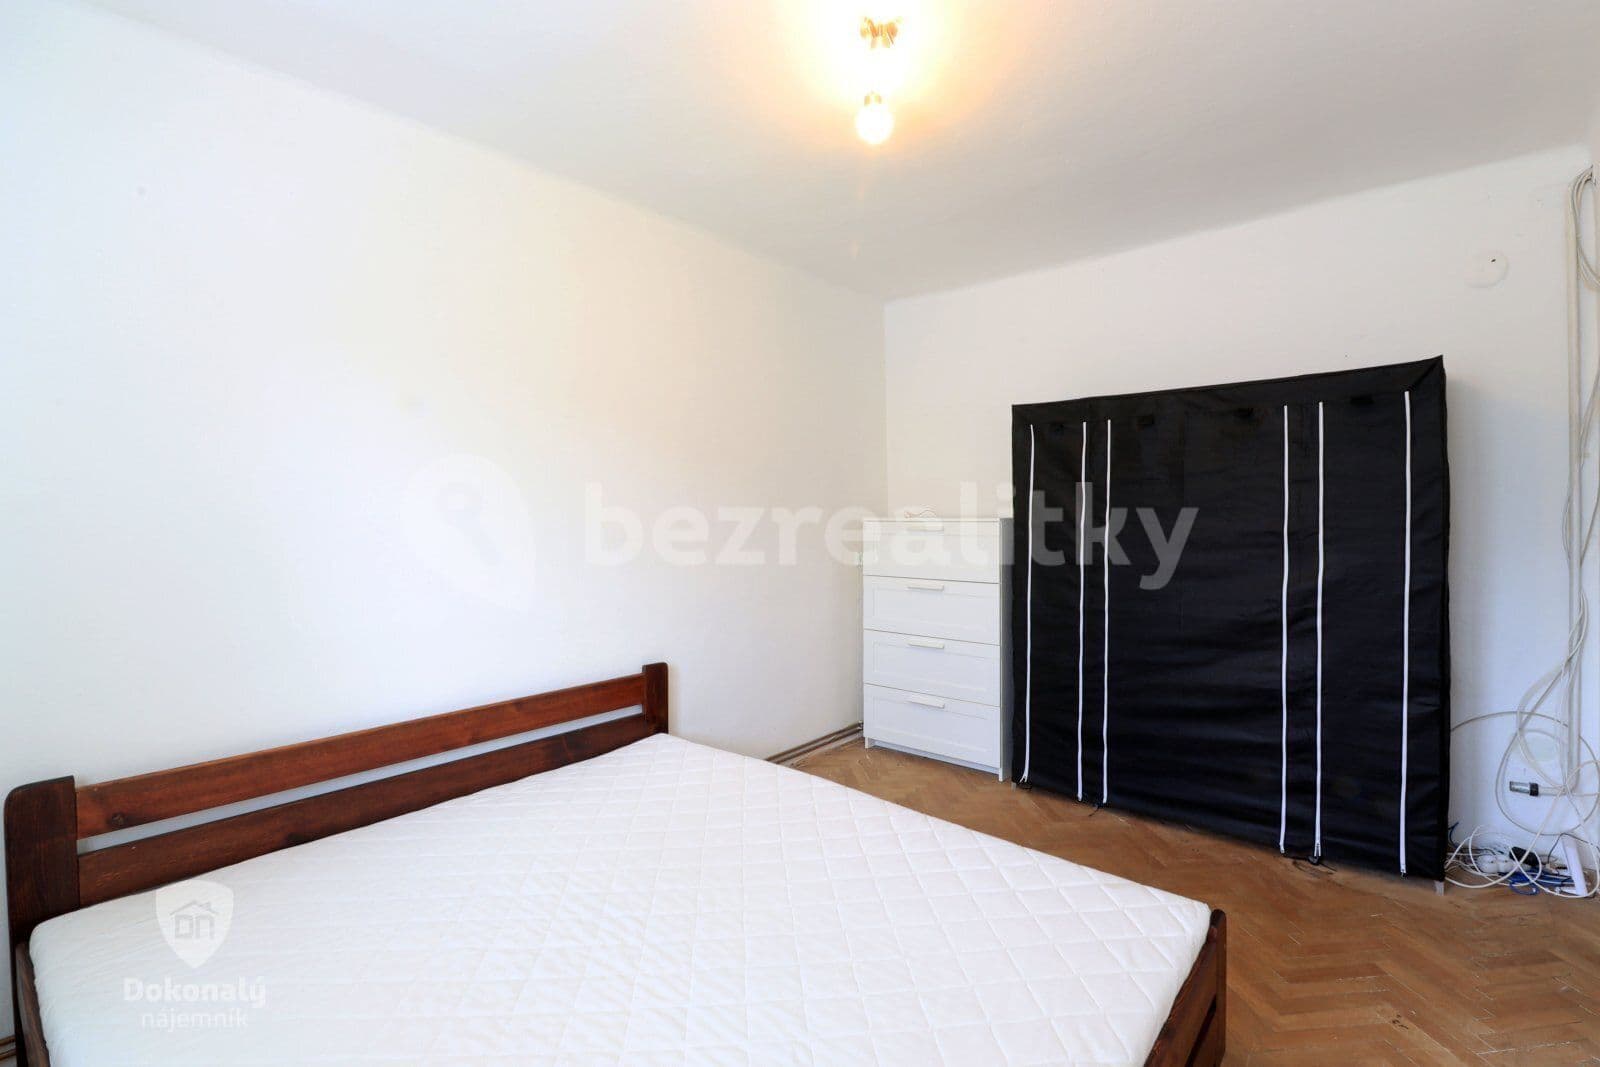 2 bedroom flat to rent, 49 m², K Dolánkám, Český Brod, Středočeský Region